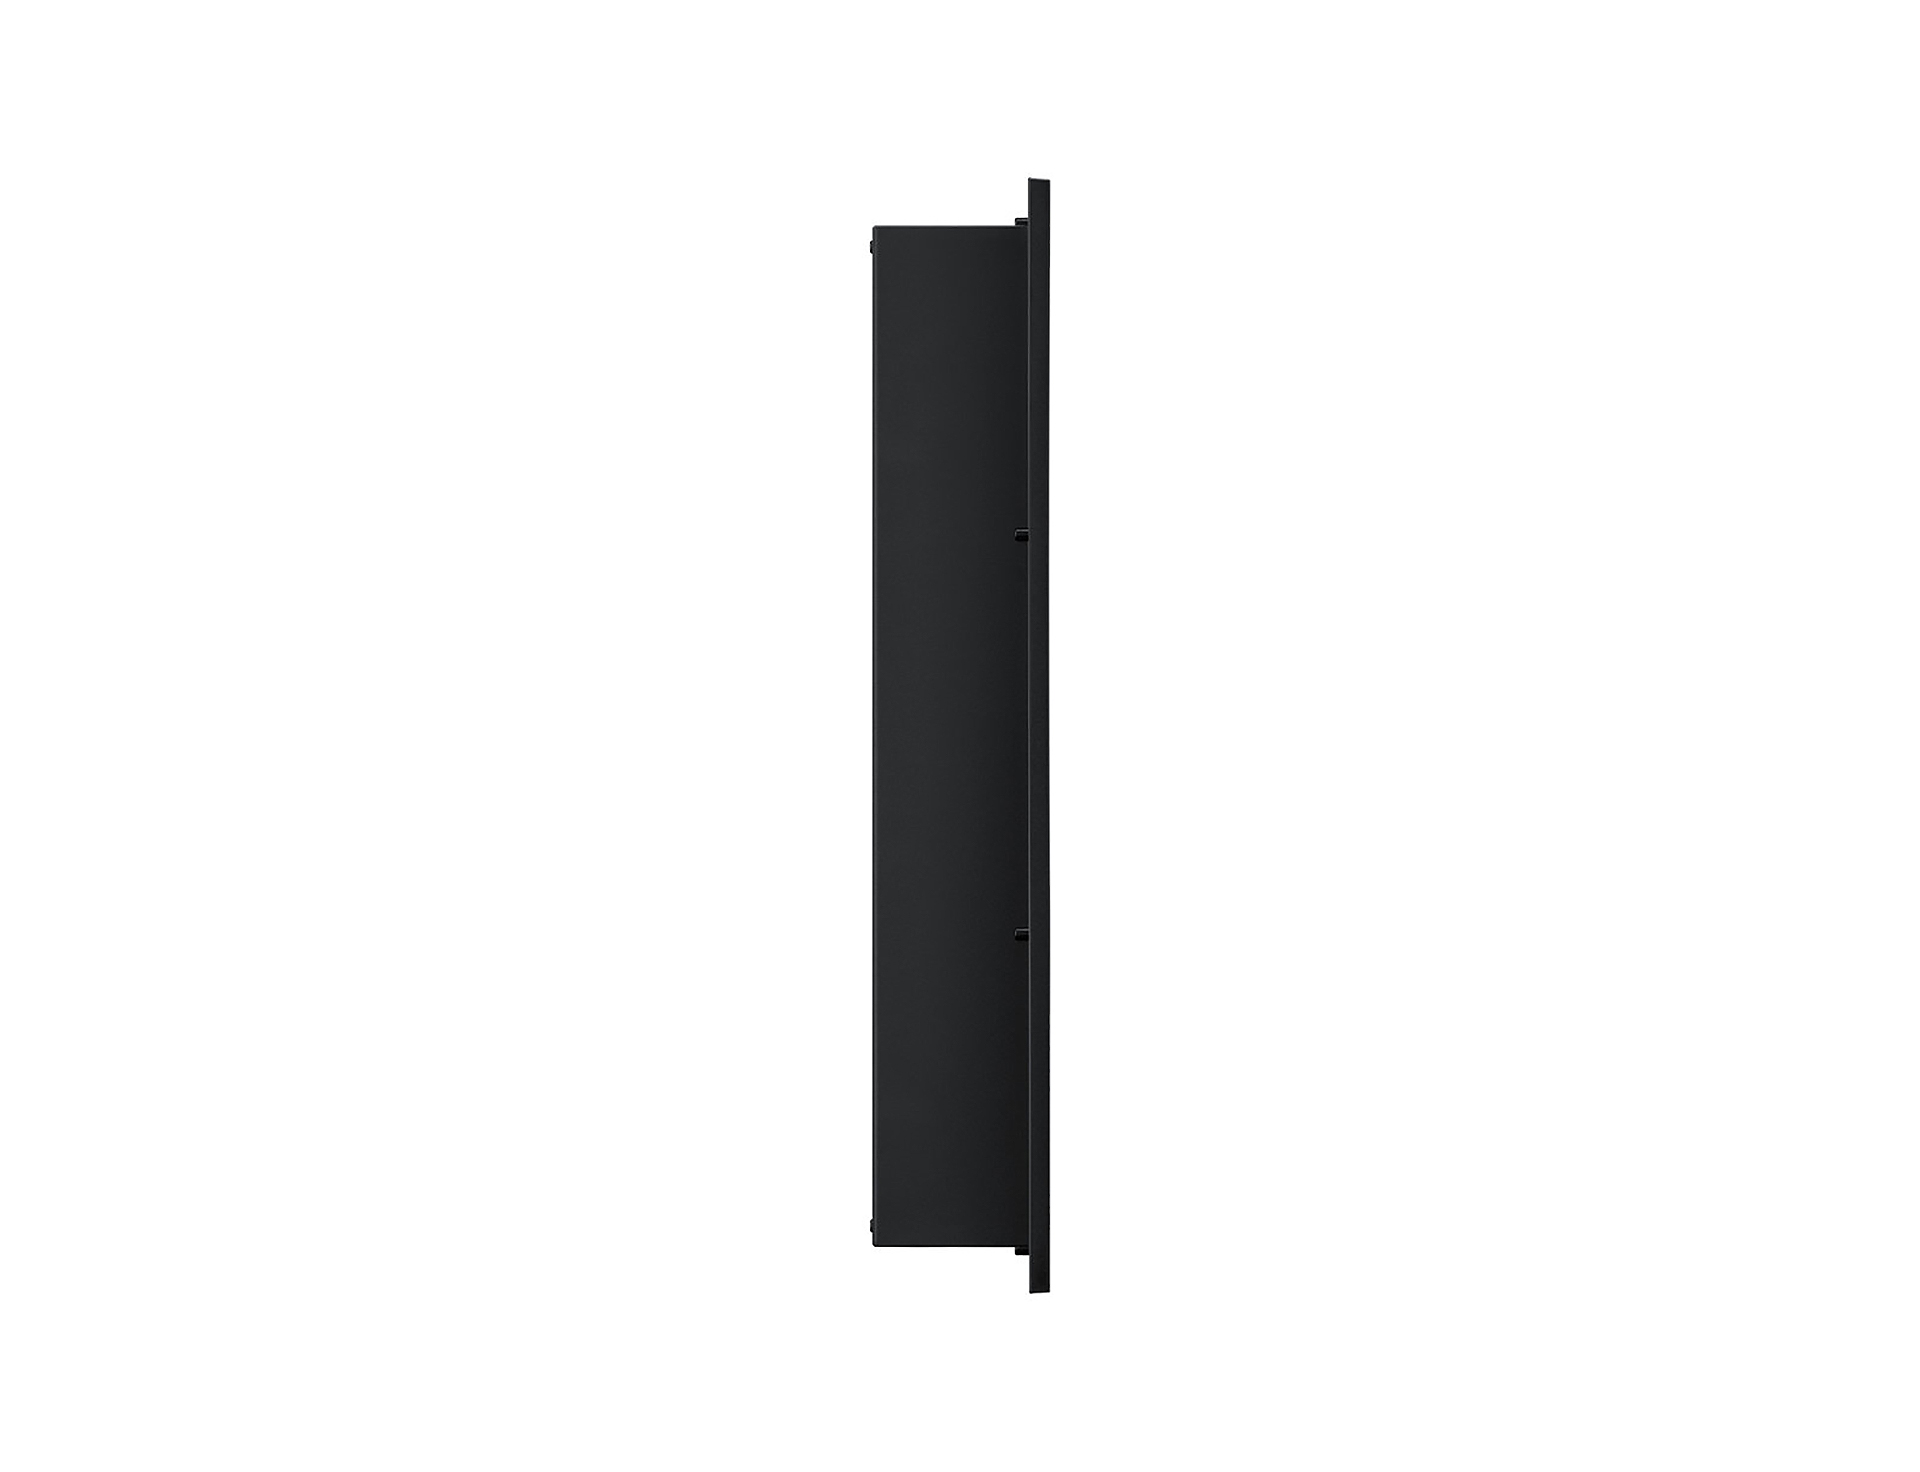 Samsung digitale Outdoor Stele | OH55D-K Outdoor Kit | Digital Signage Display Kiosk